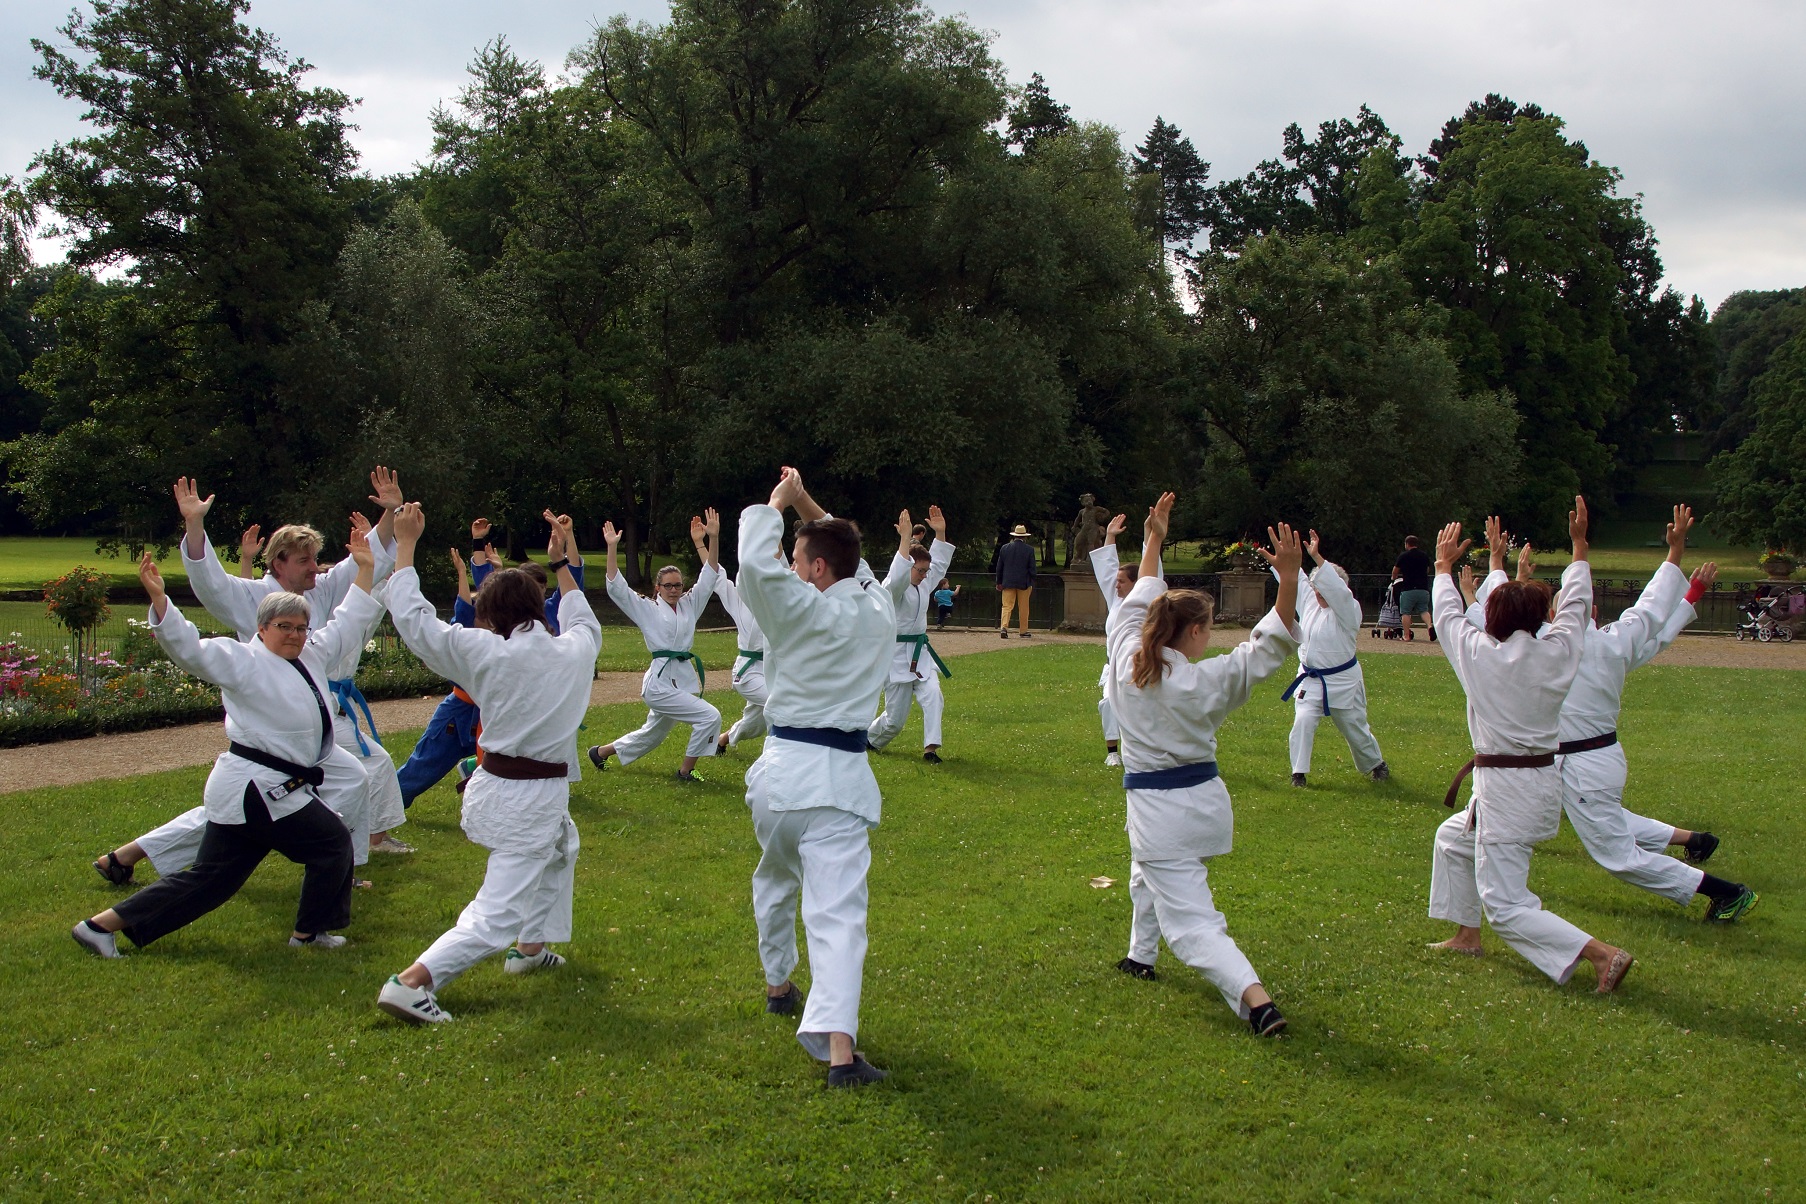 Bild: Einige Judokas machen auf einer Wiese im Schlosspark Dehn Übungen.